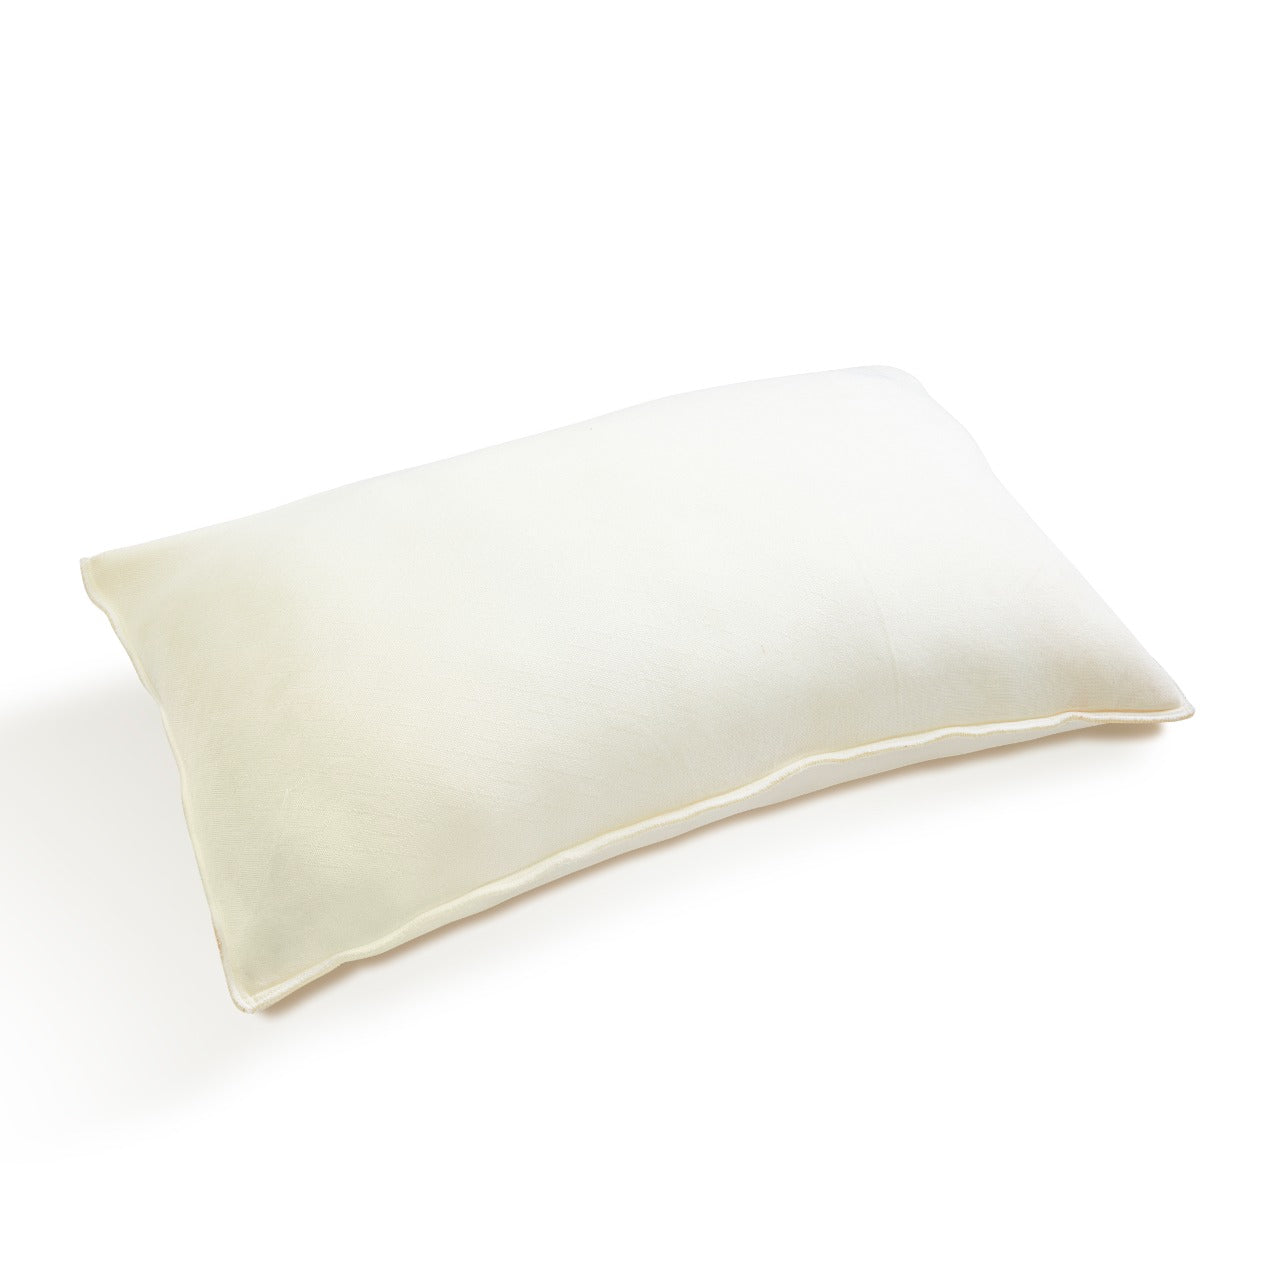 Super Soft Shredded Memory Foam Pillow